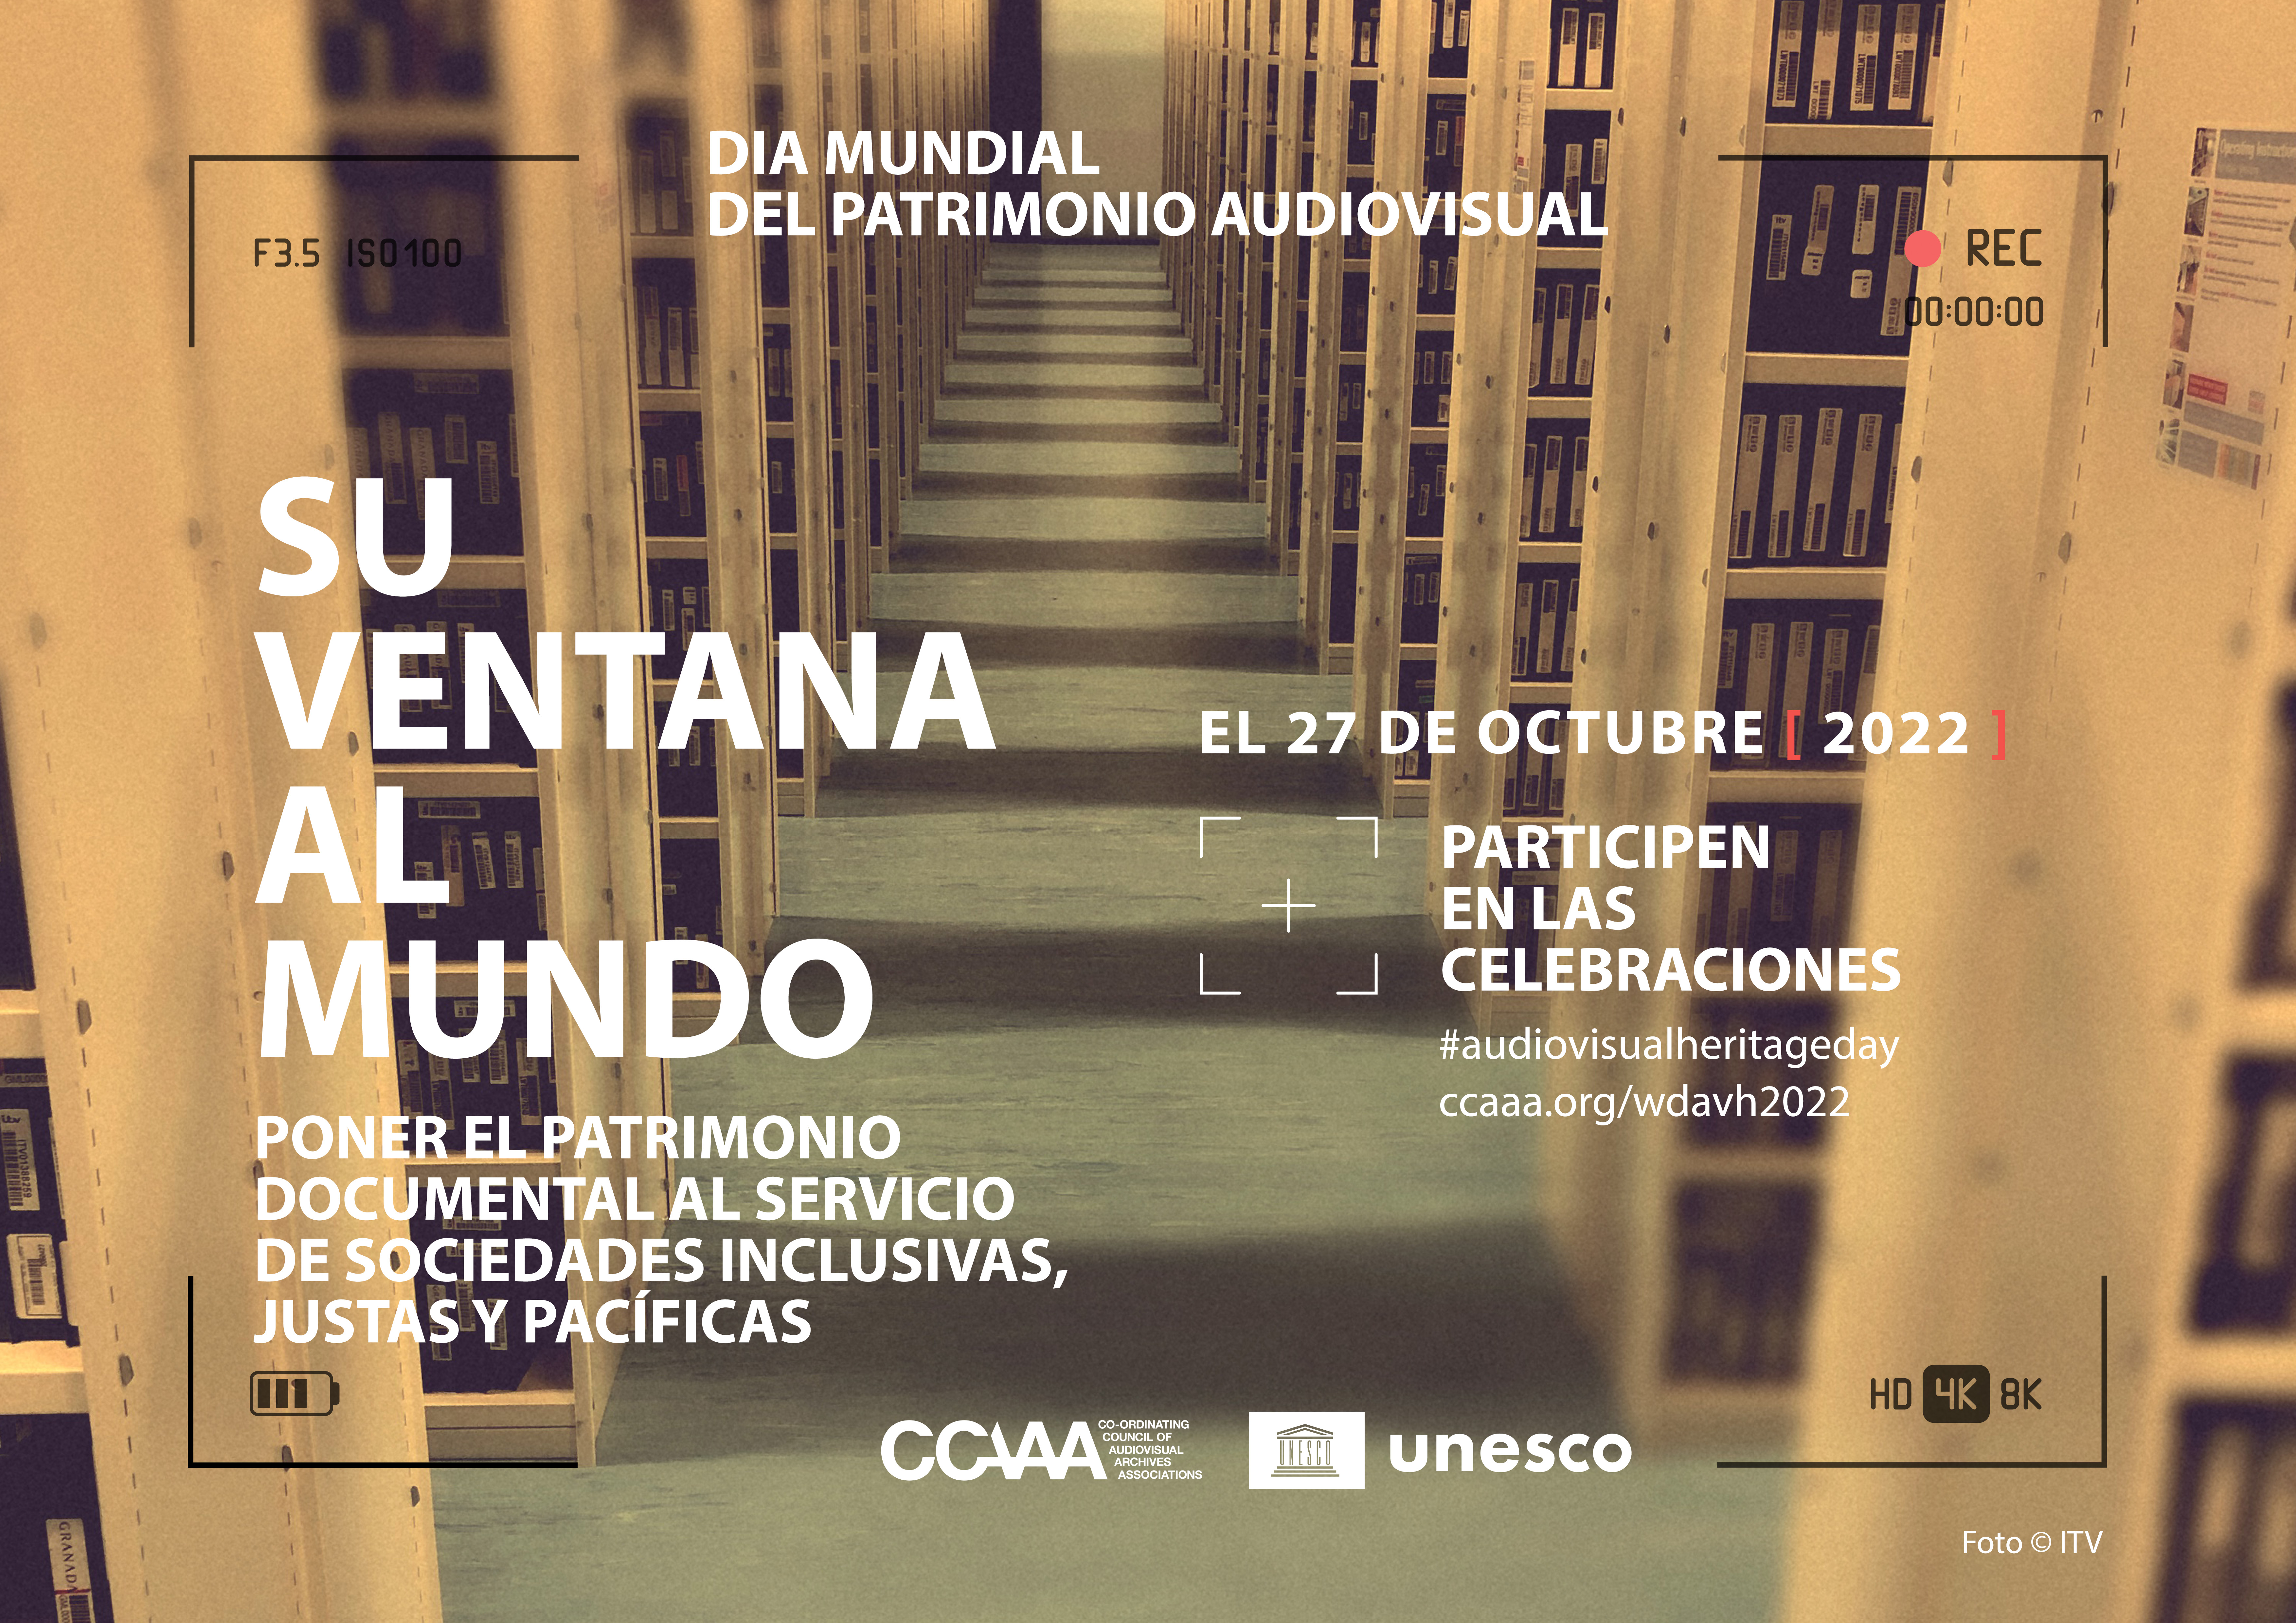 Eventos  Agenda Cultural Biblioteca Nacional del Perú